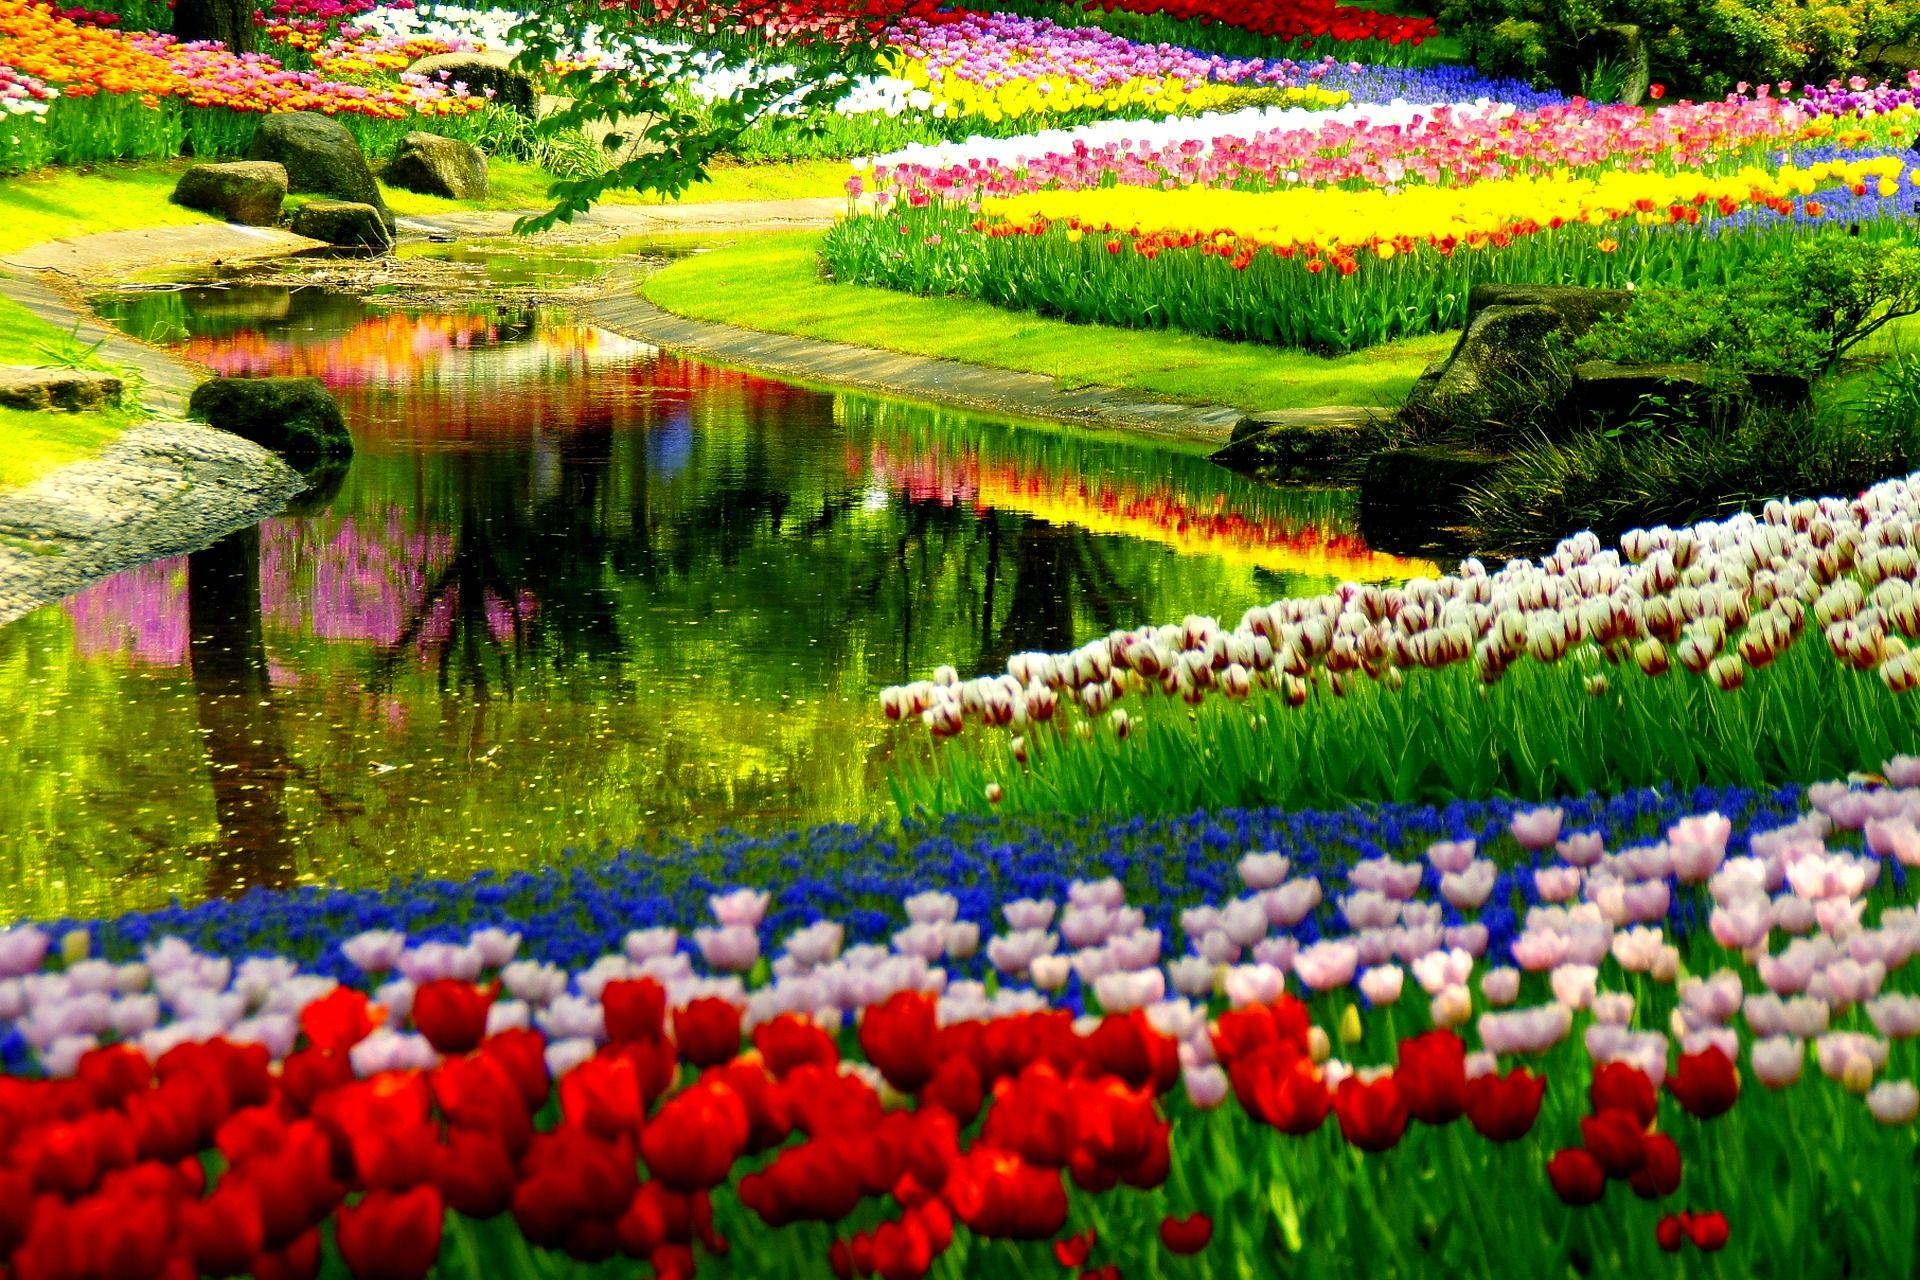 Spring Flower Garden Park Wallpaper